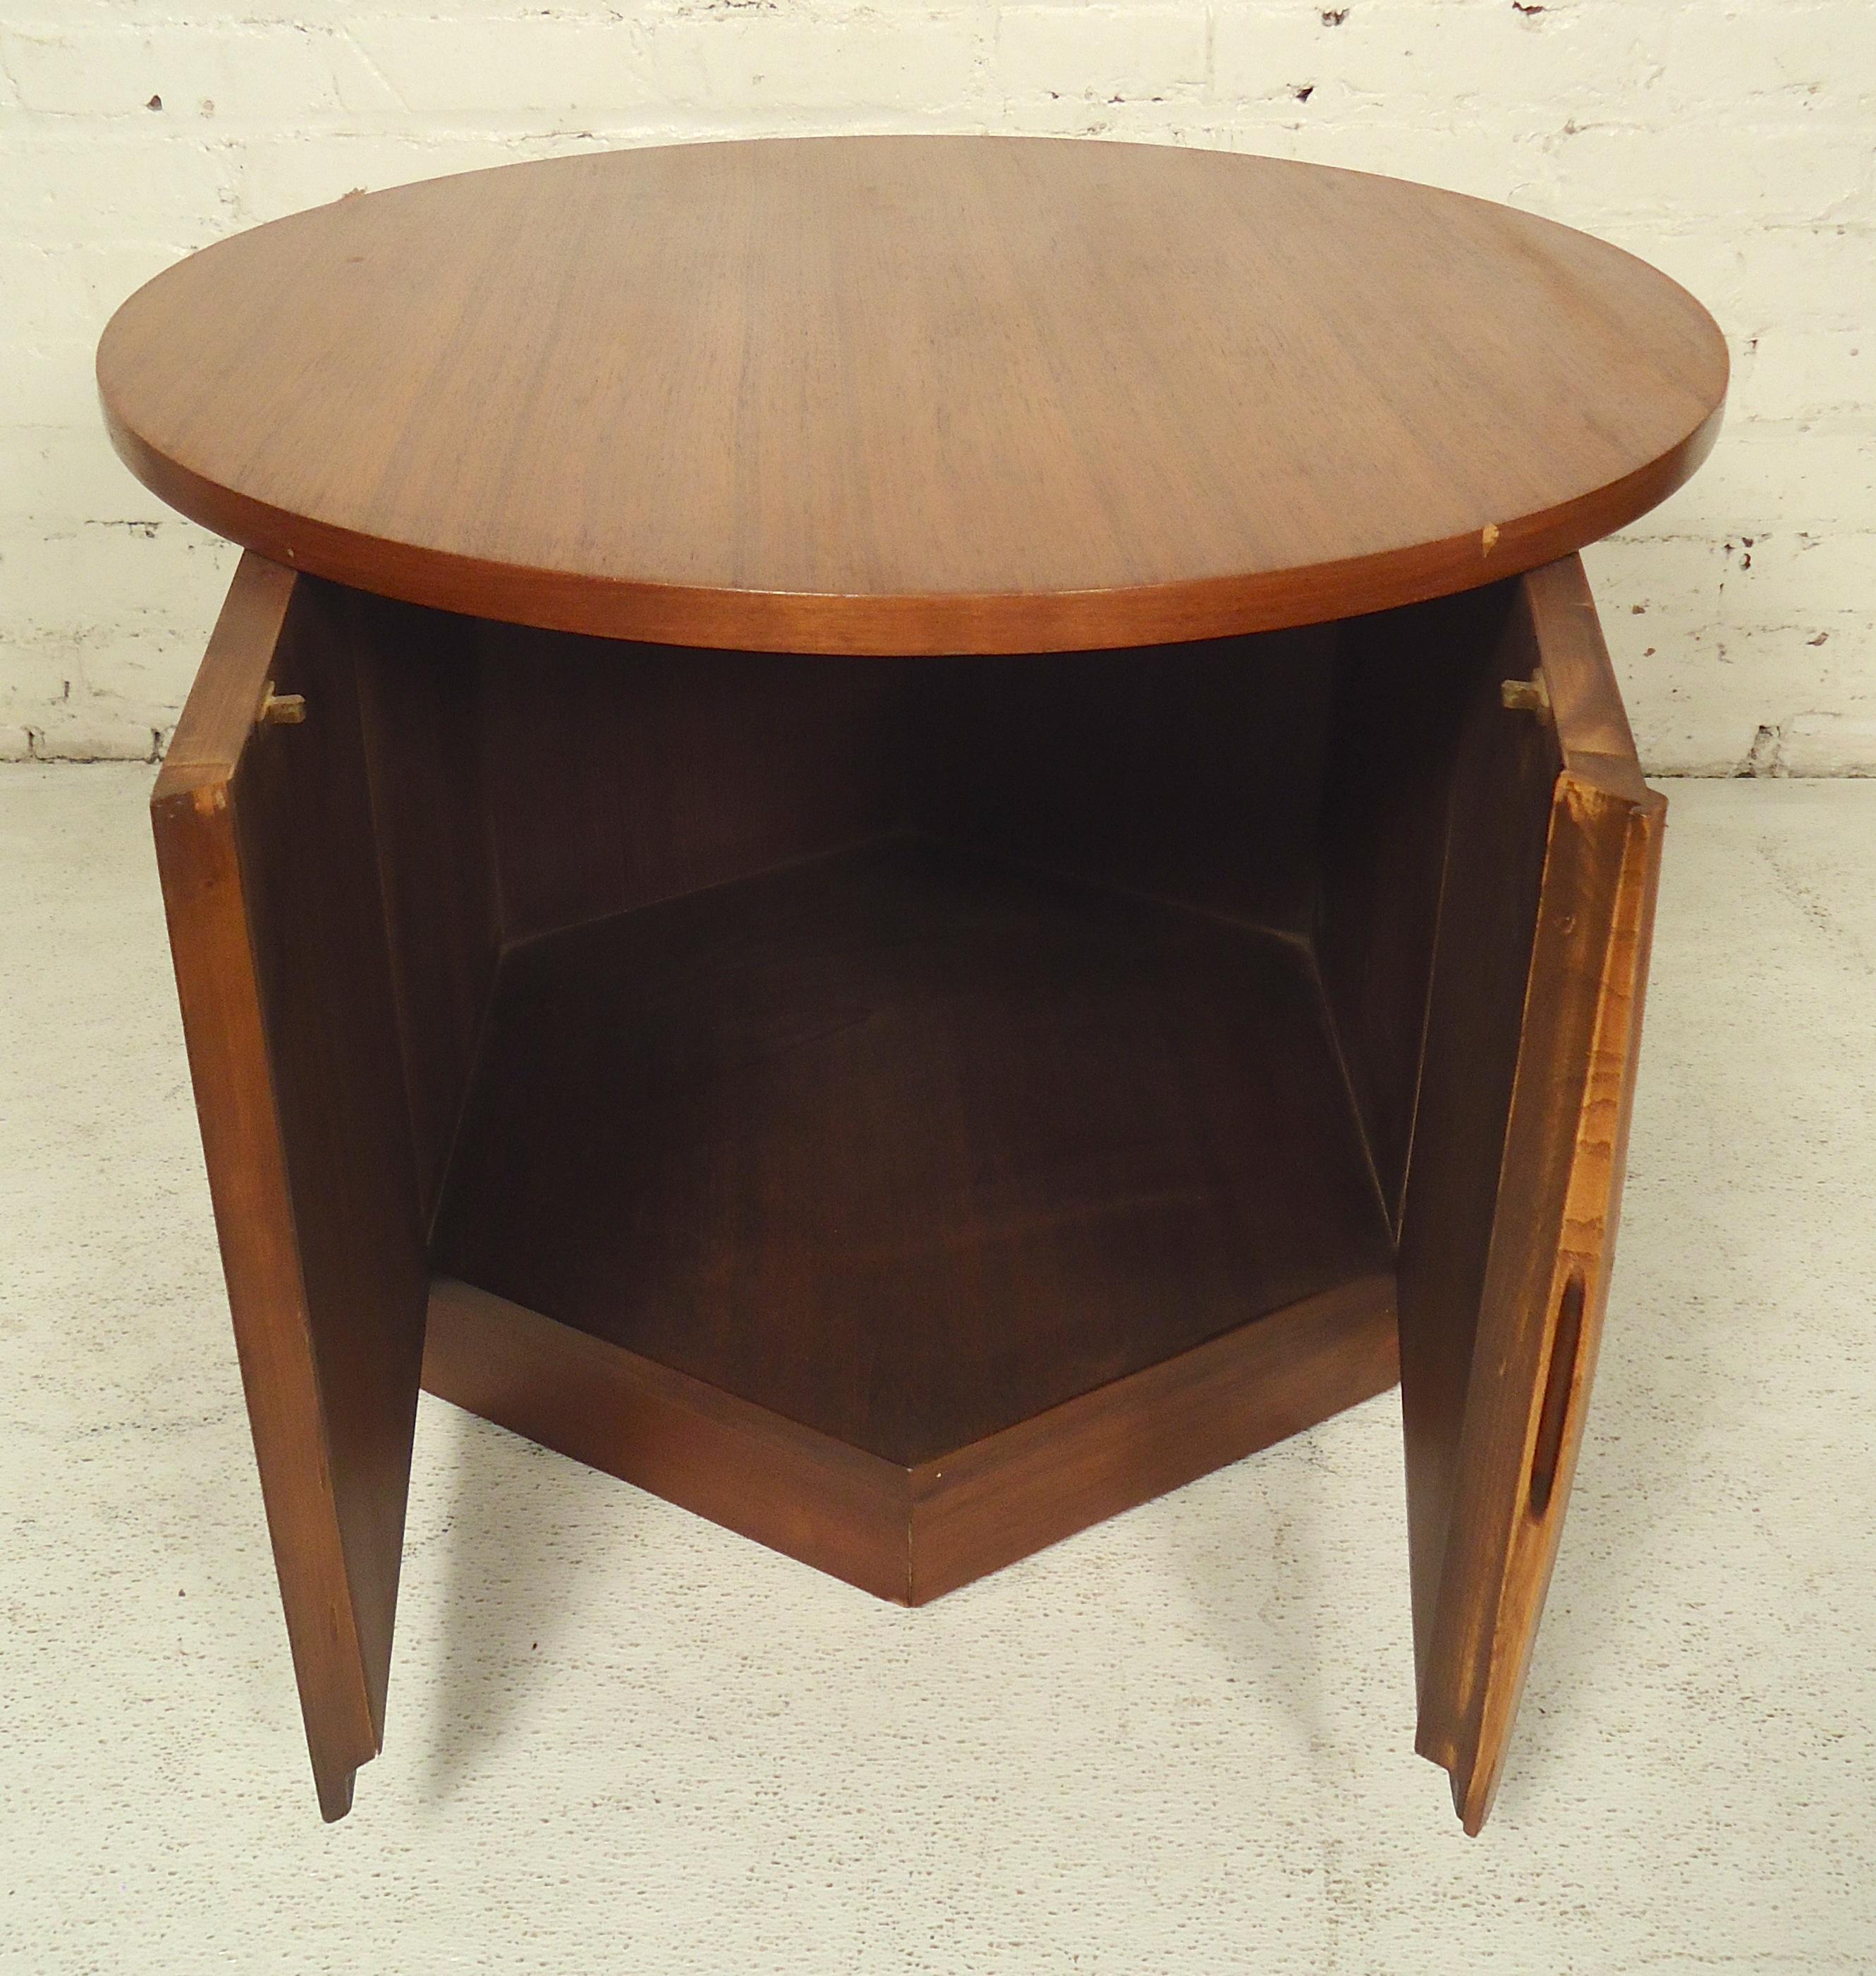 Moderner Vintage-Tisch aus Nussbaumholz mit Ablagefach. Als Sofabeistelltisch oder Nachttisch zu verwenden.

(Bitte bestätigen Sie den Standort des Artikels - NY oder NJ - mit dem Händler).
   